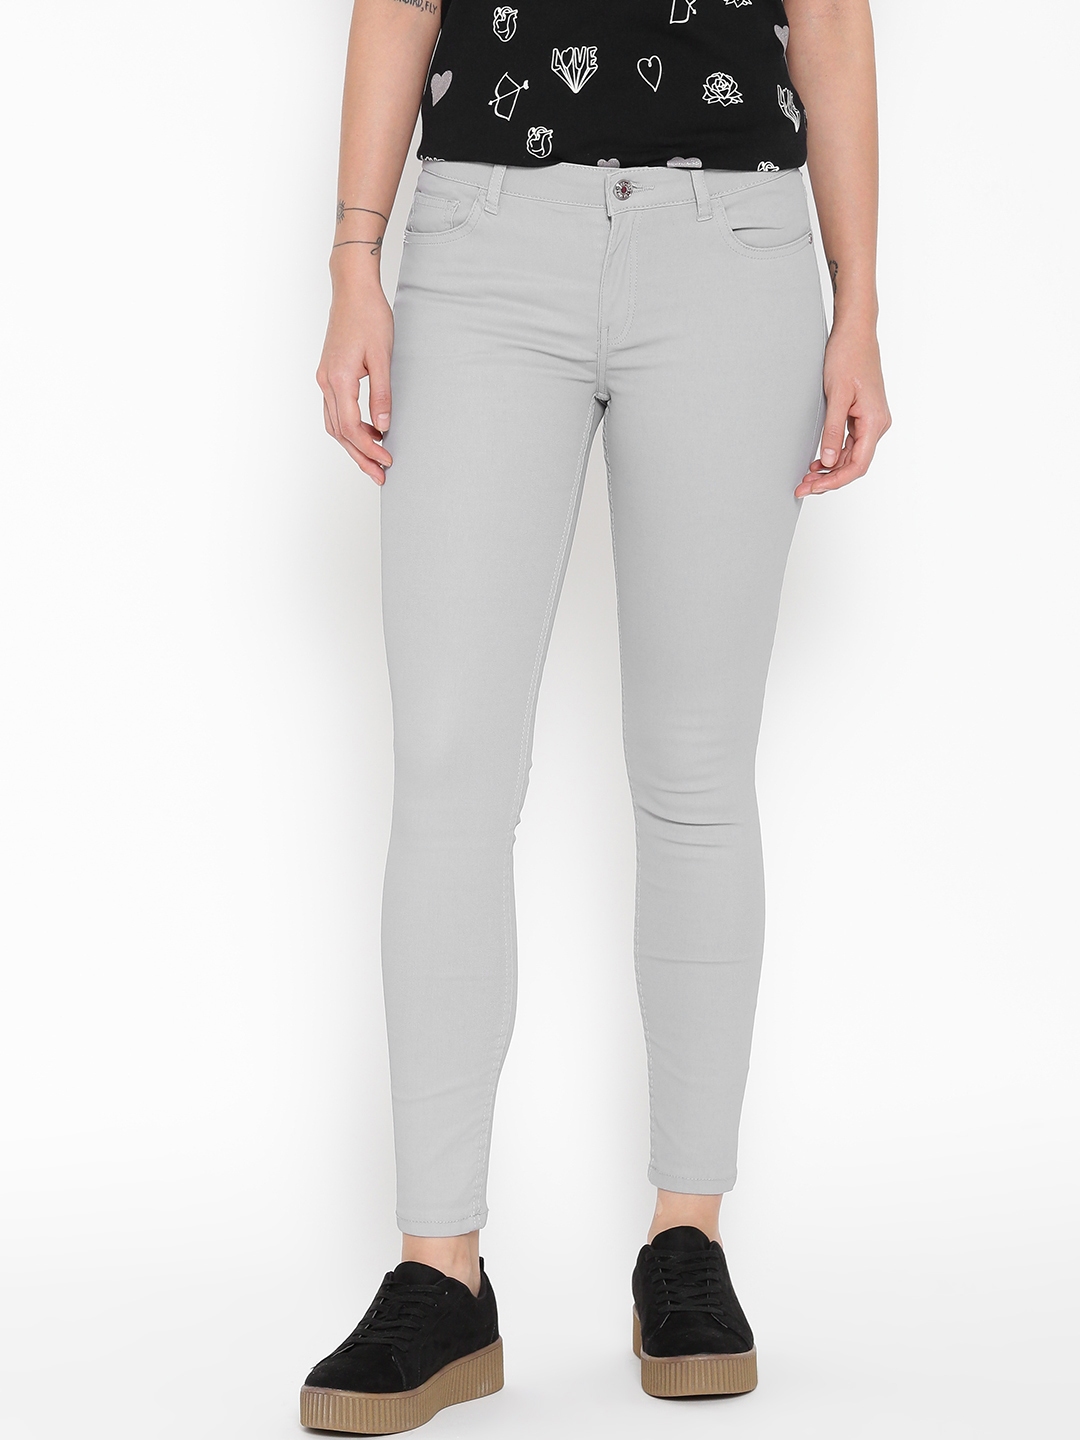 Buy MANGO Women Grey Solid Trousers - Trousers for Women 2001420 | Myntra